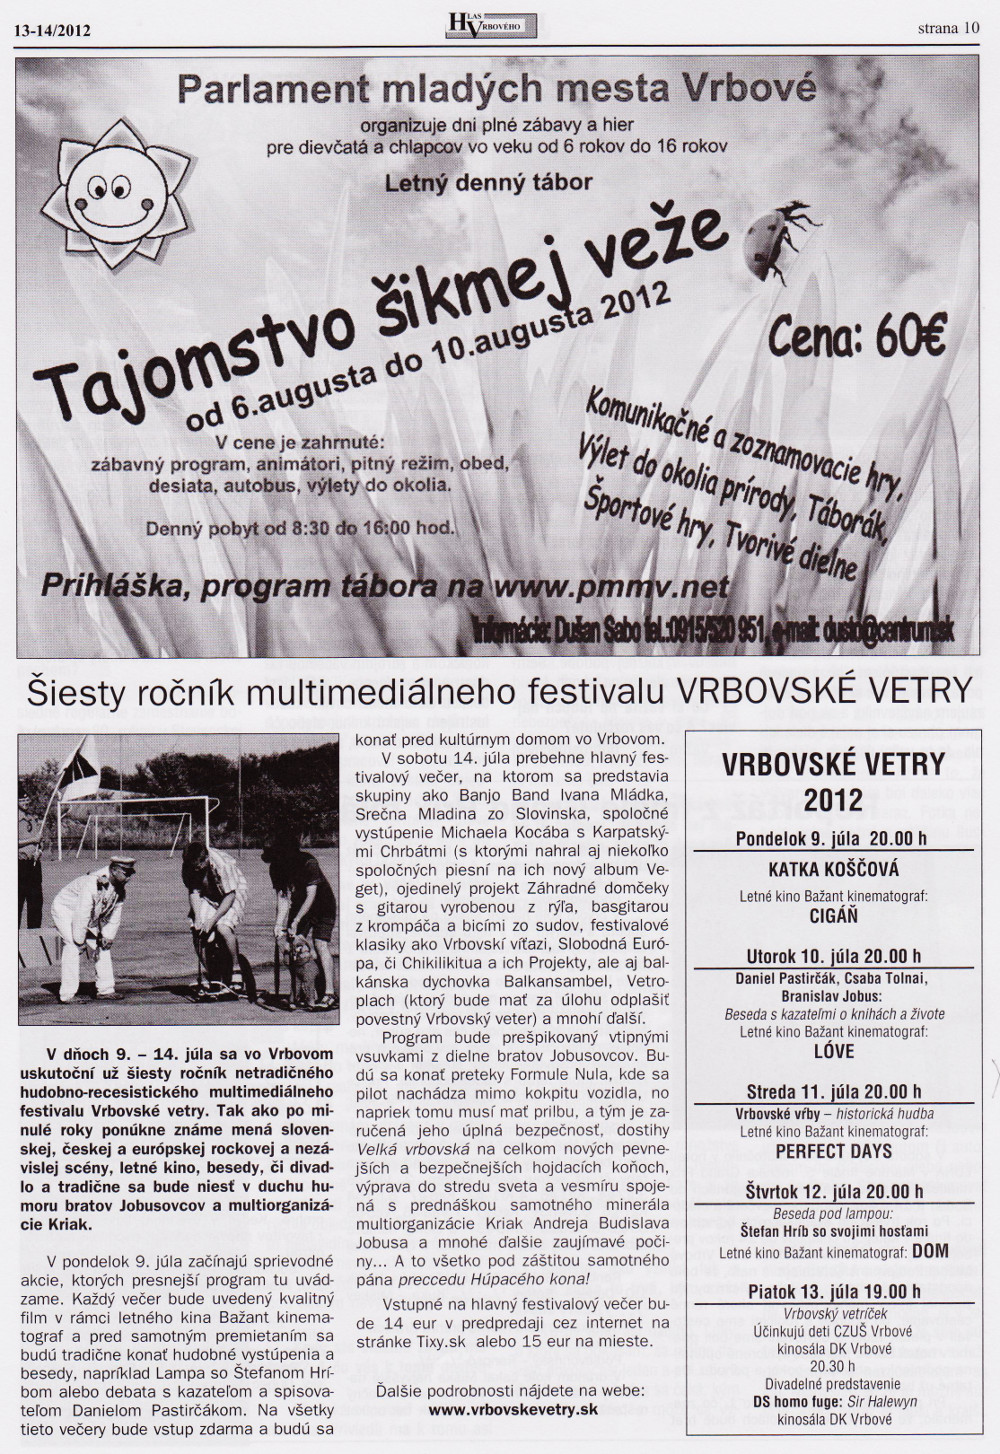 Hlas Vrbového 13-14/2012, strana 10